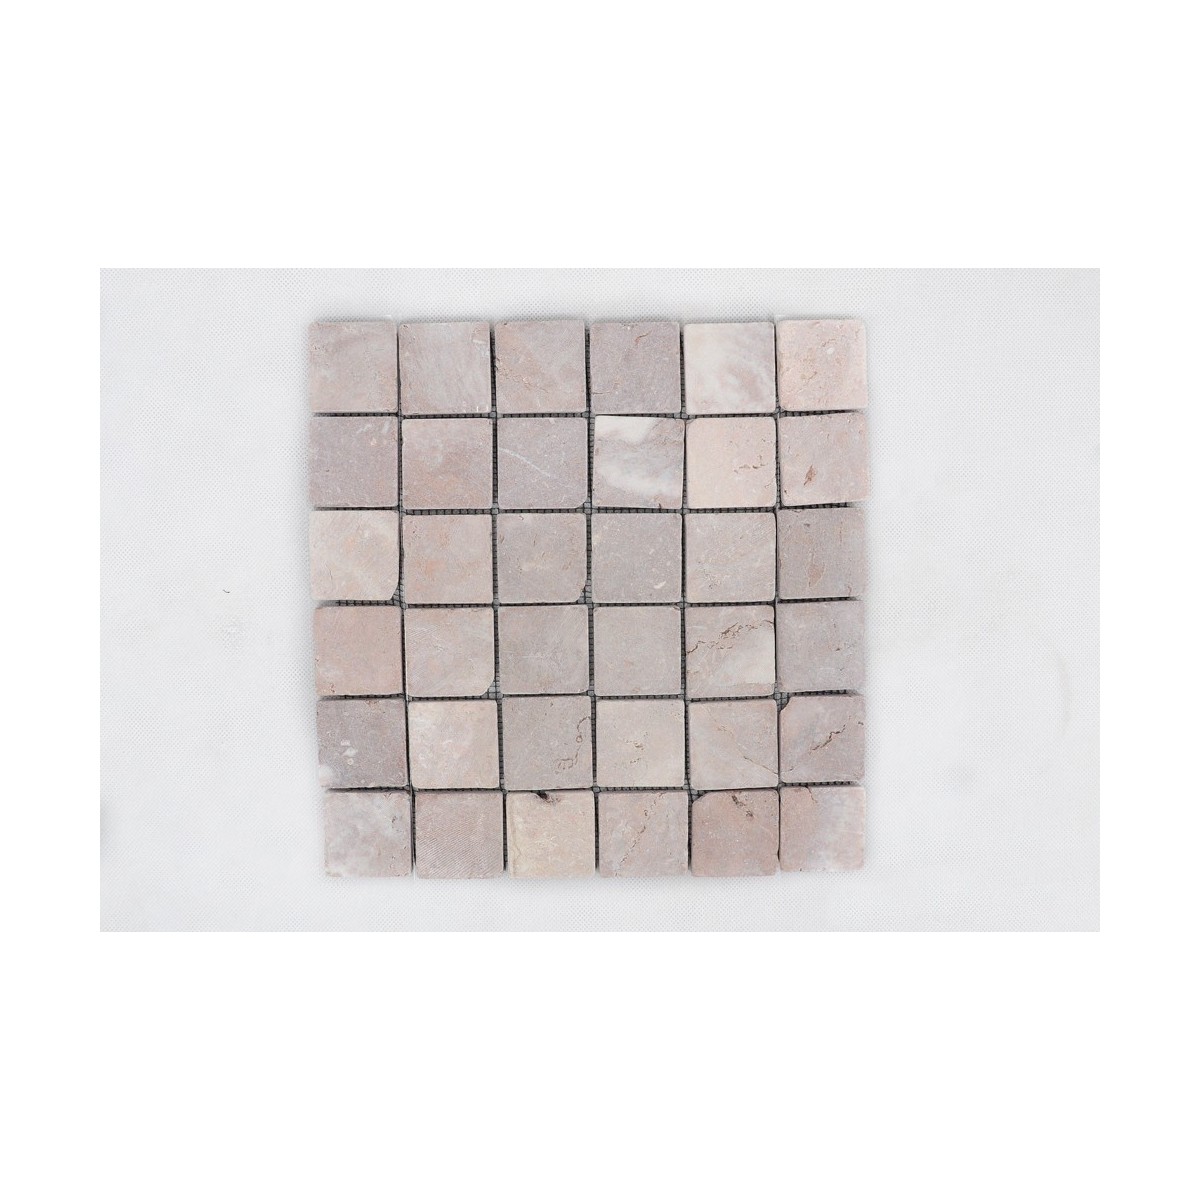 KOSTKA:  * COCO BROWN 5x5 mozaika kamienna na siatce INDUSTONE